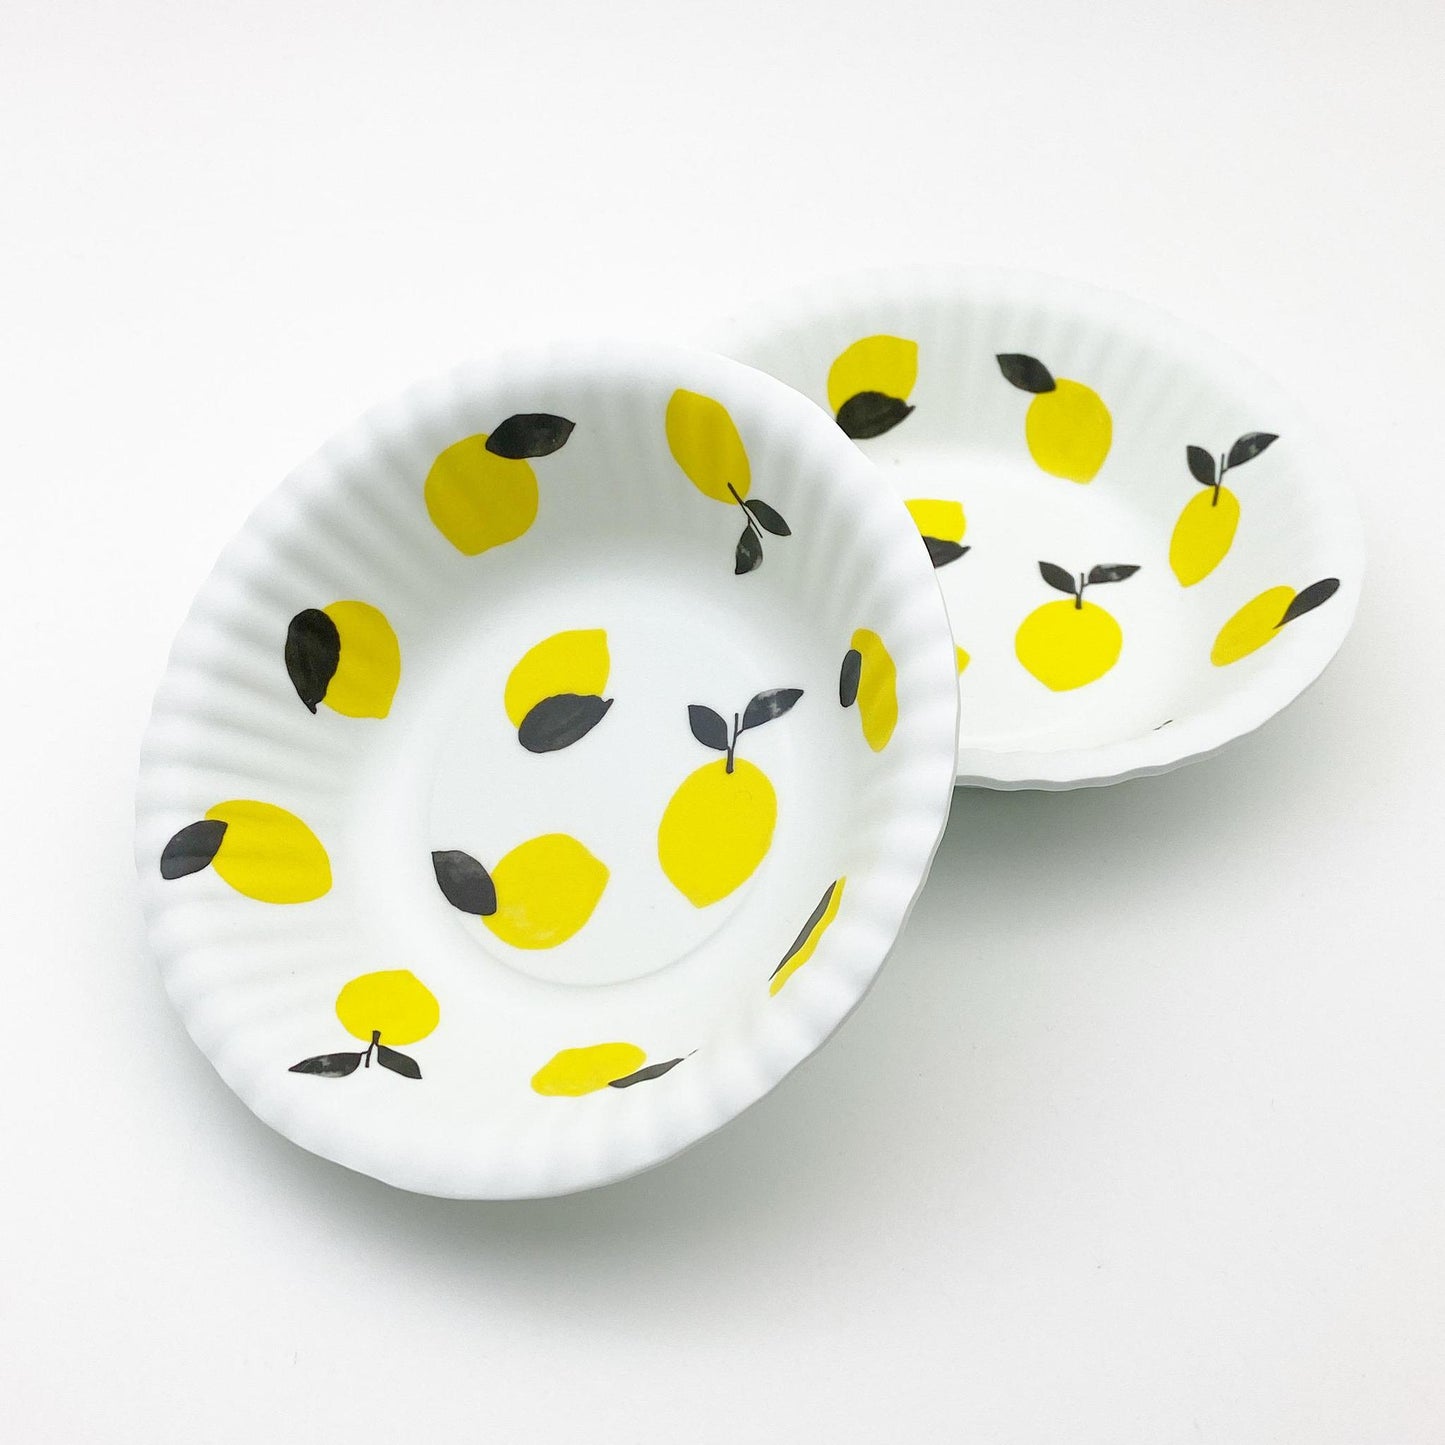 Bowl - Melamine "Paper Plate" - Lemons